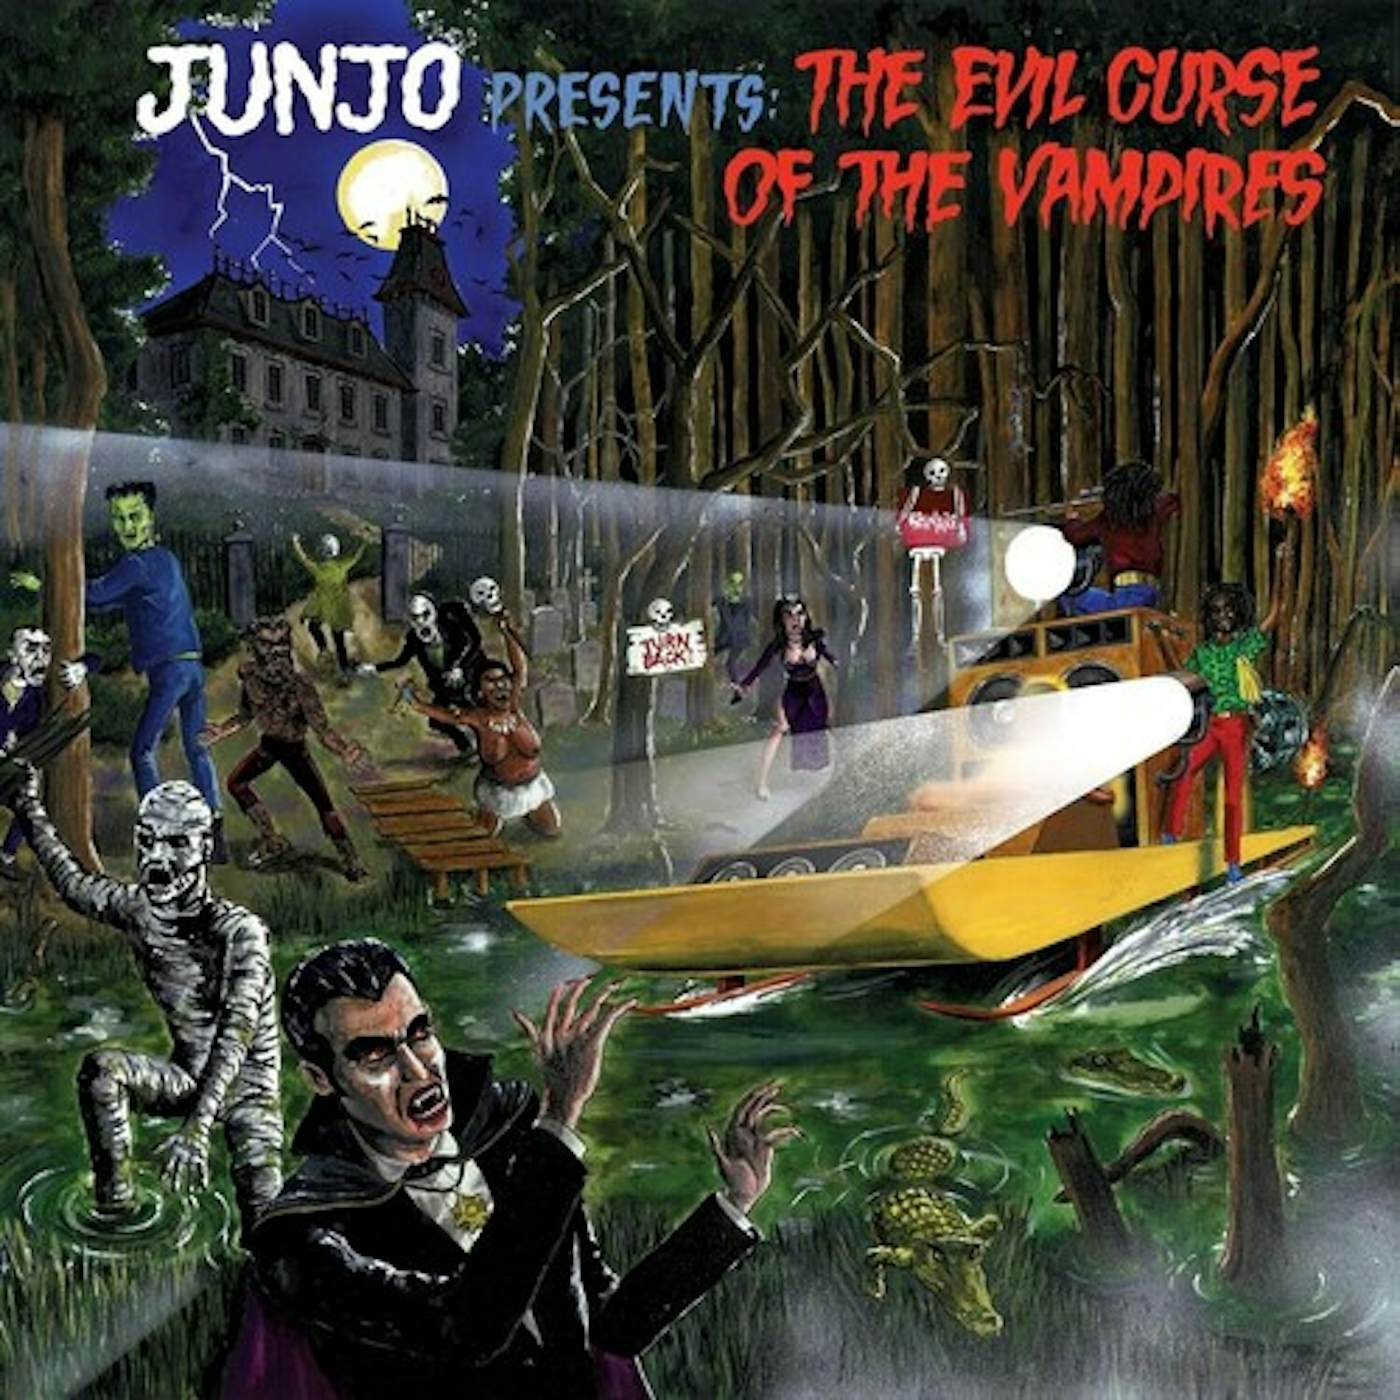 Roots Radics JUNJO PRESENTS: THE EVIL CURSE OF THE VAMPIRES Vinyl Record